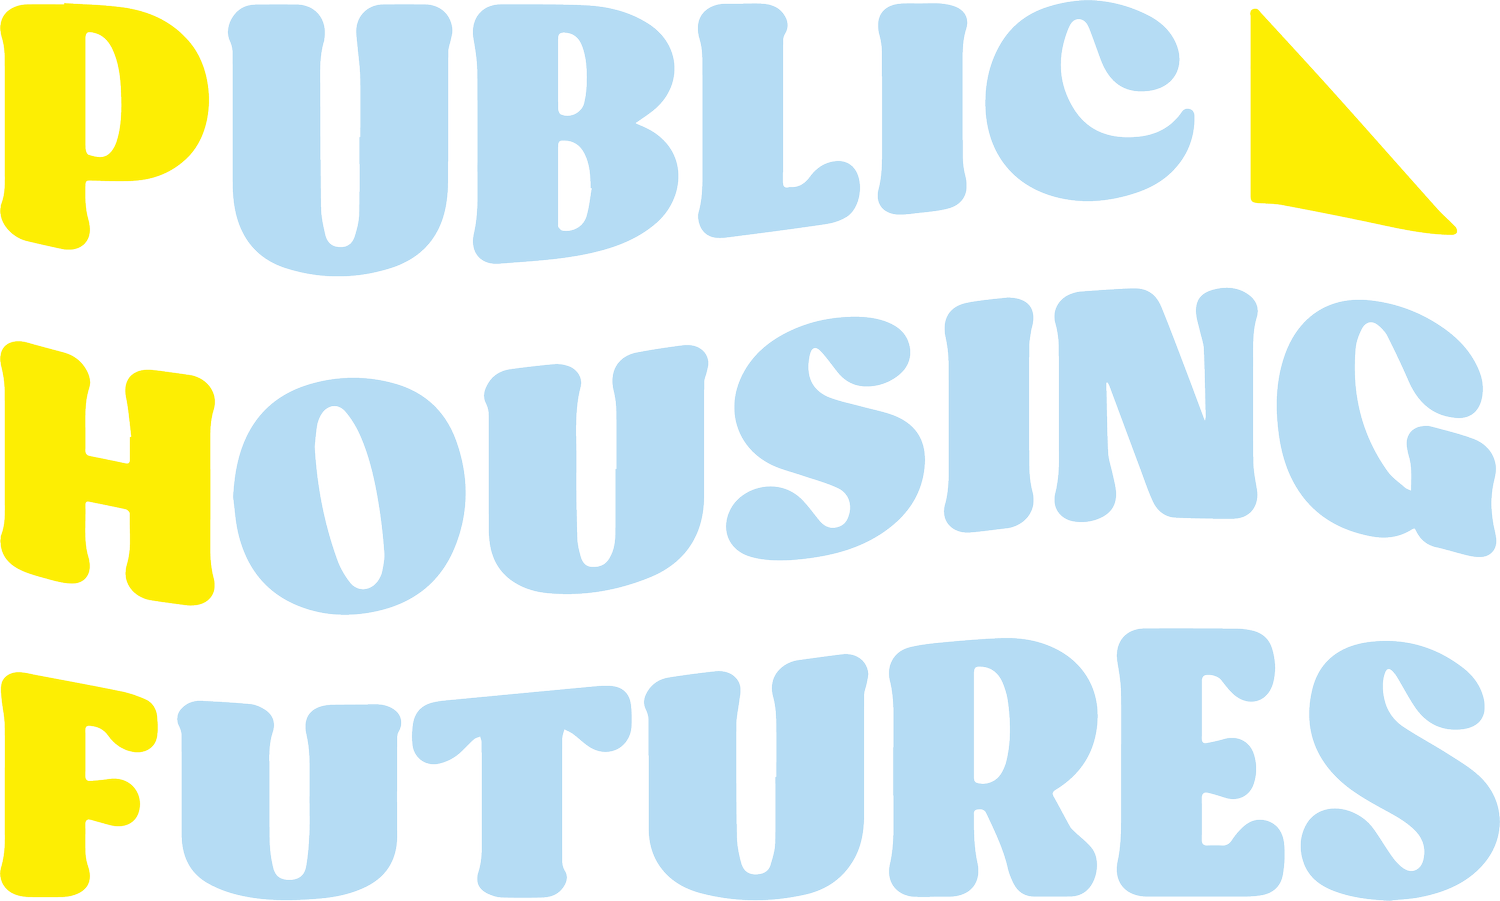 Public Housing Futures